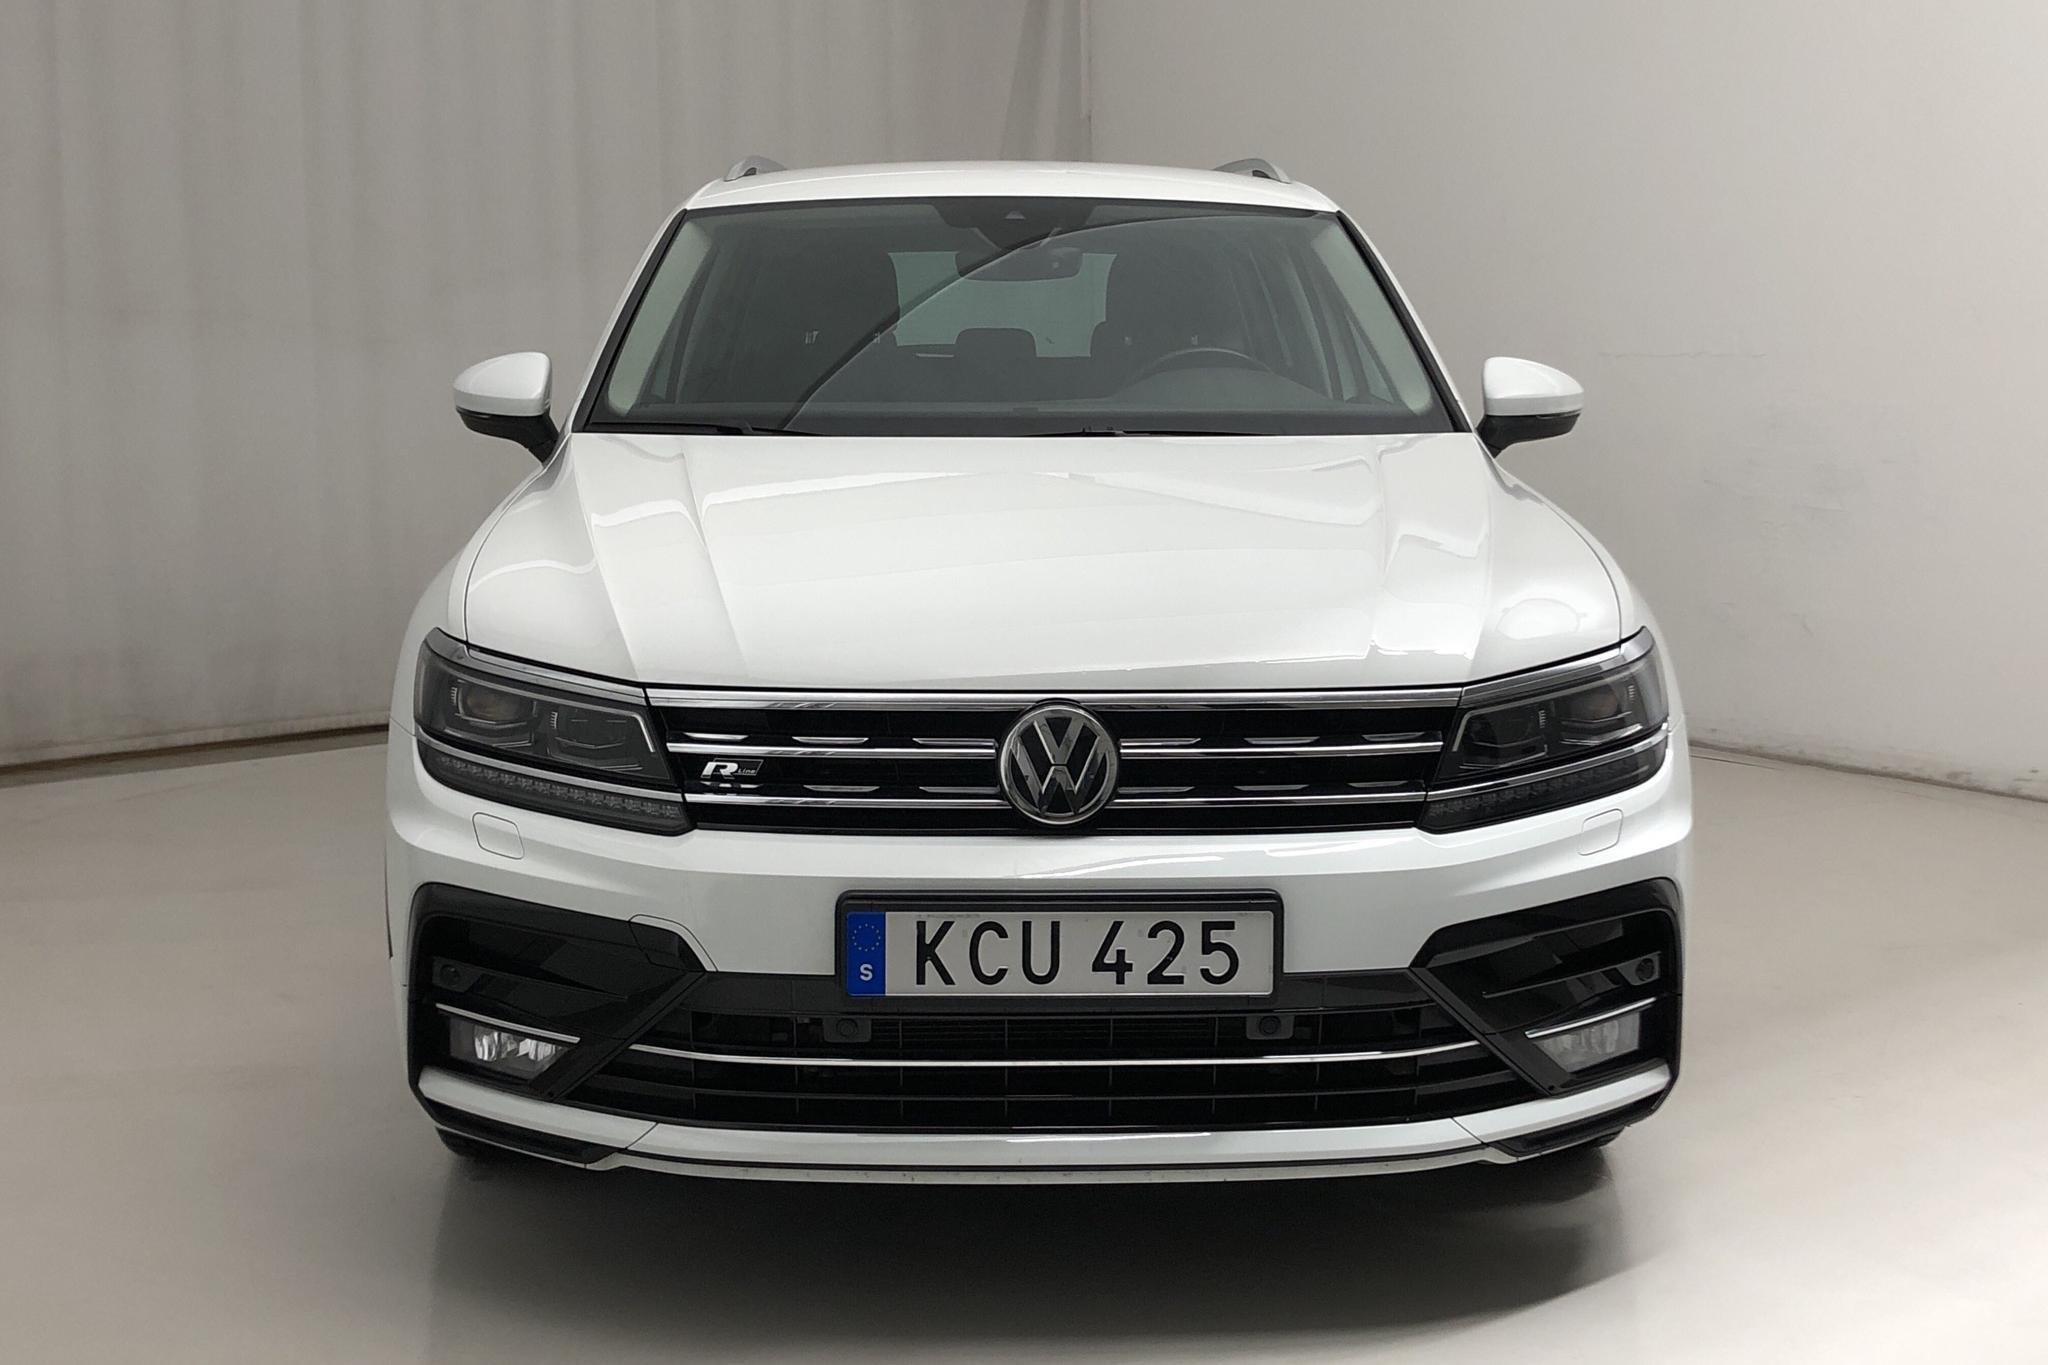 VW Tiguan 2.0 TDI 4MOTION (190hk) - 51 400 km - Automatic - white - 2018